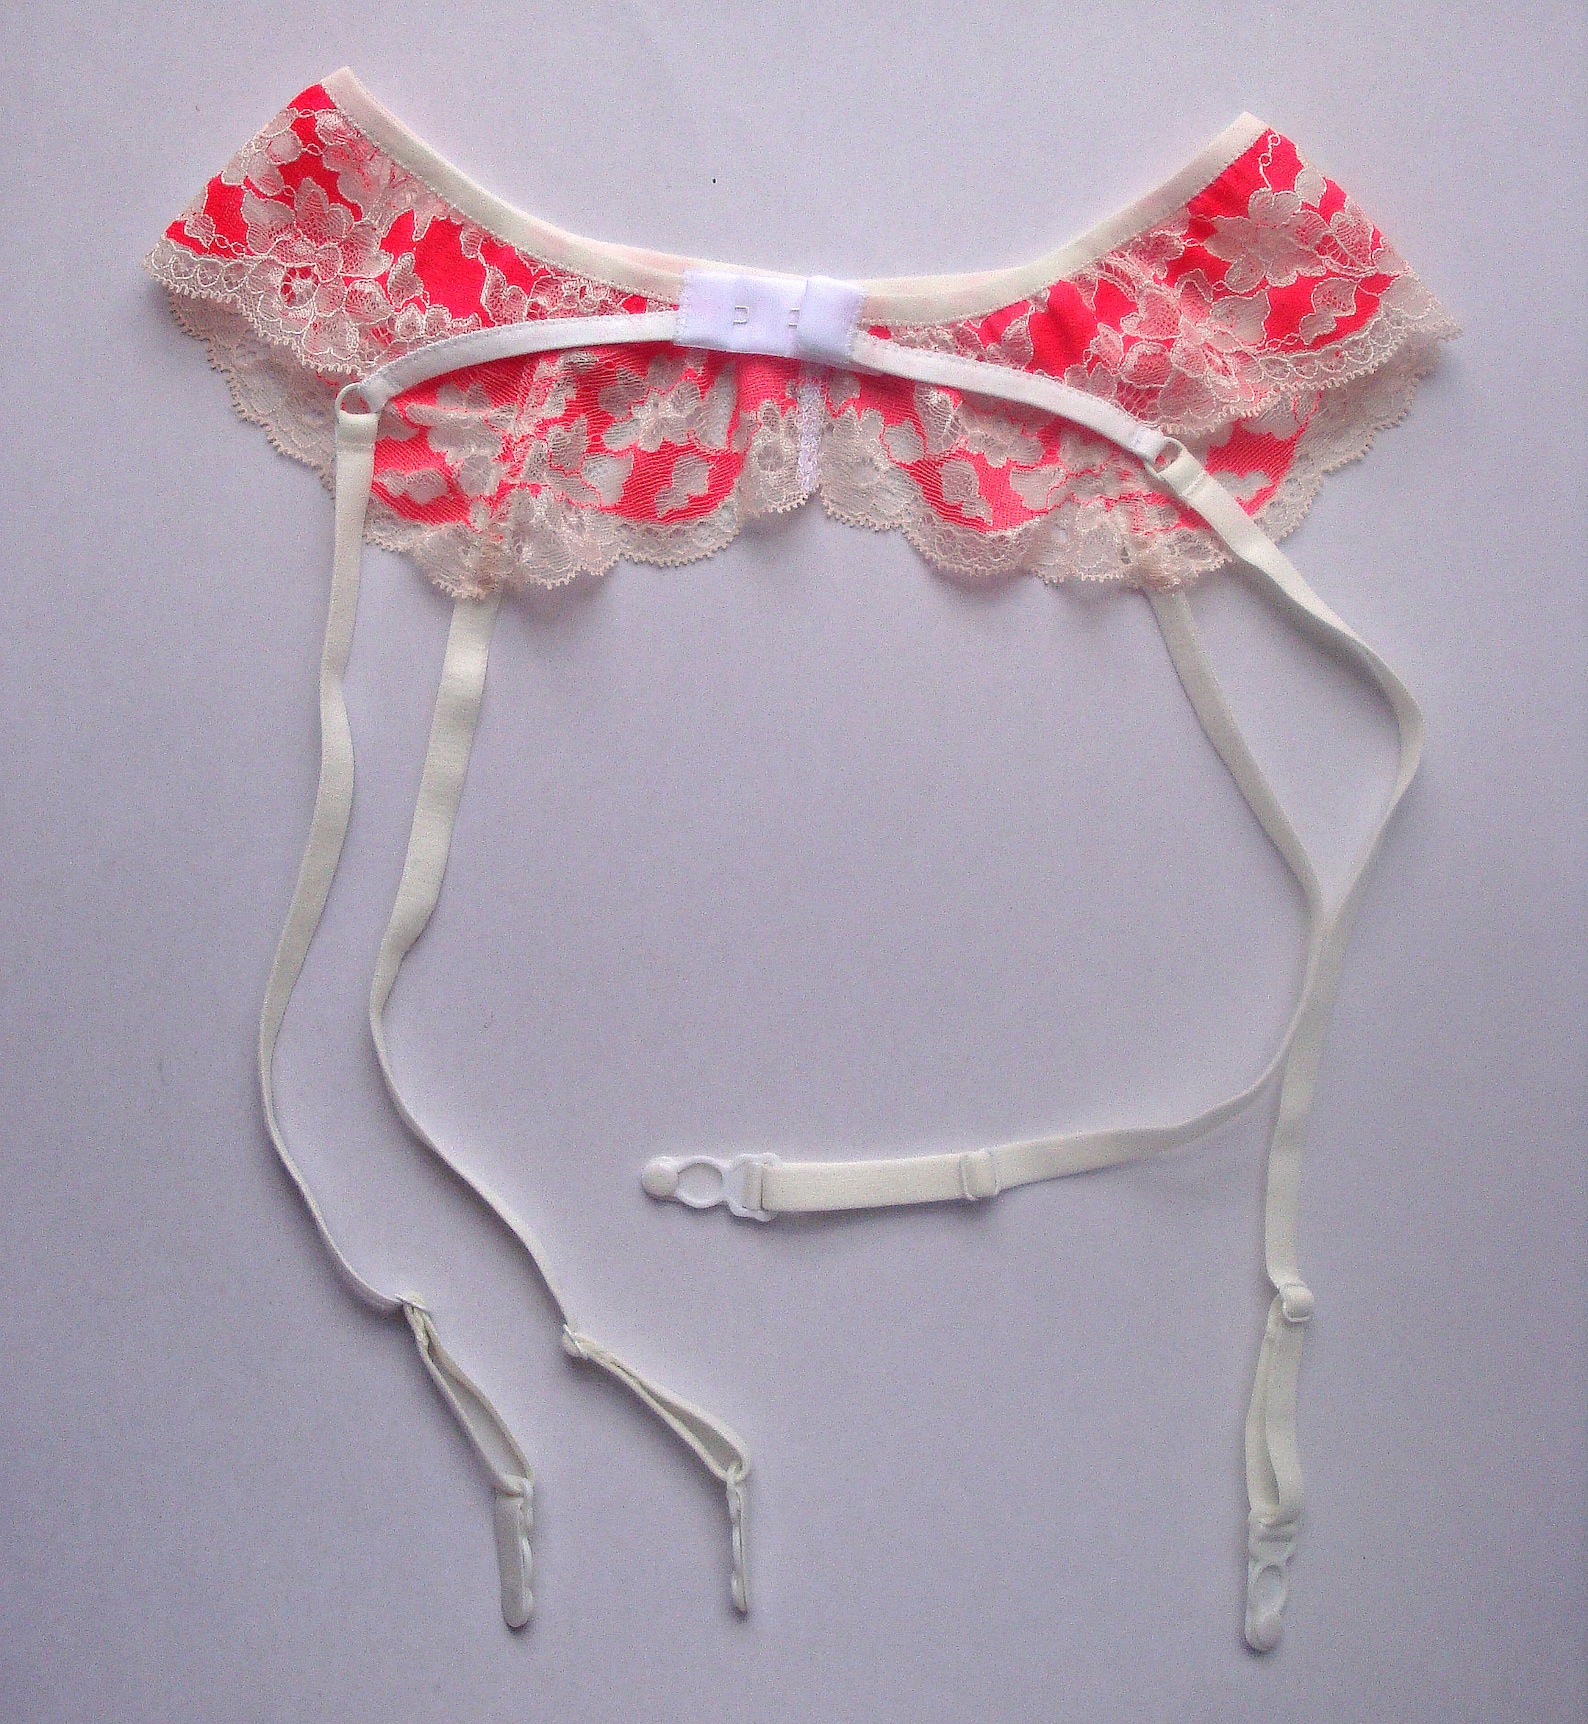 Lace garter belt Silk suspender belt Sheer lingerie Strappy | Etsy